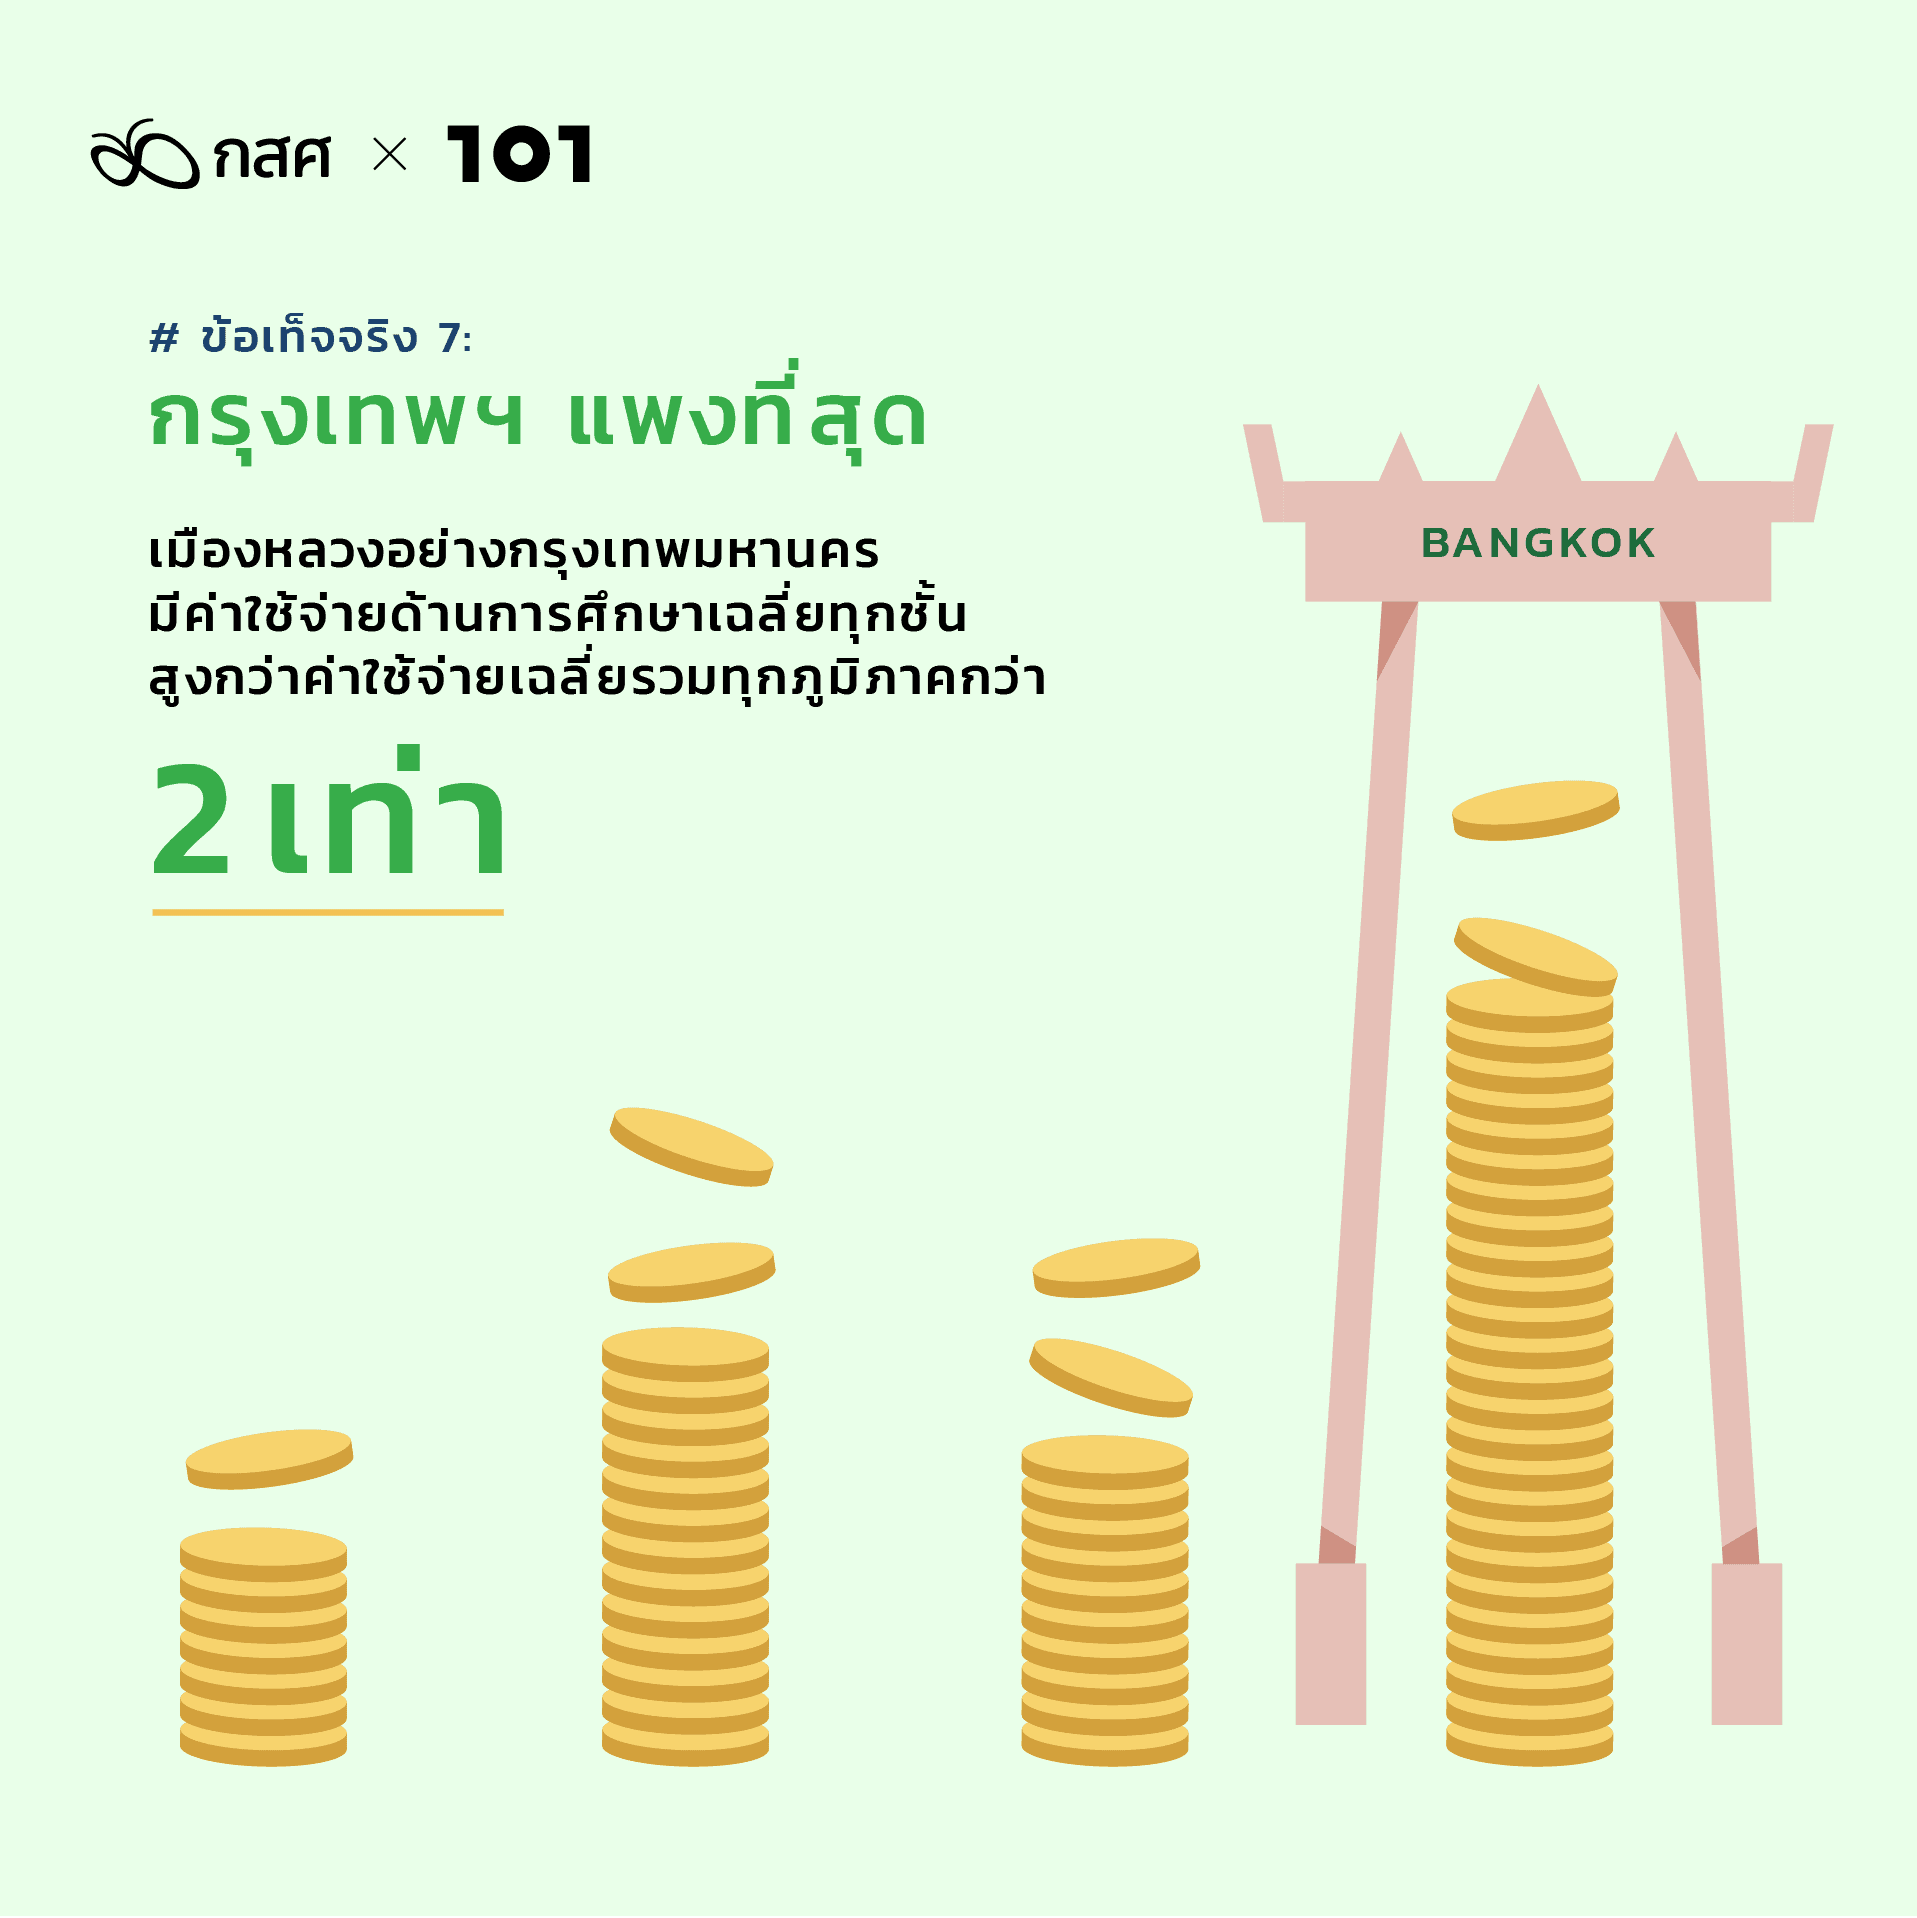 สำรวจความเหลื่อมล้ำการศึกษาไทย เพิ่มโอกาสให้เด็กยากจน: ข้อเท็จจริง 7: กรุงเทพฯ แพงที่สุด